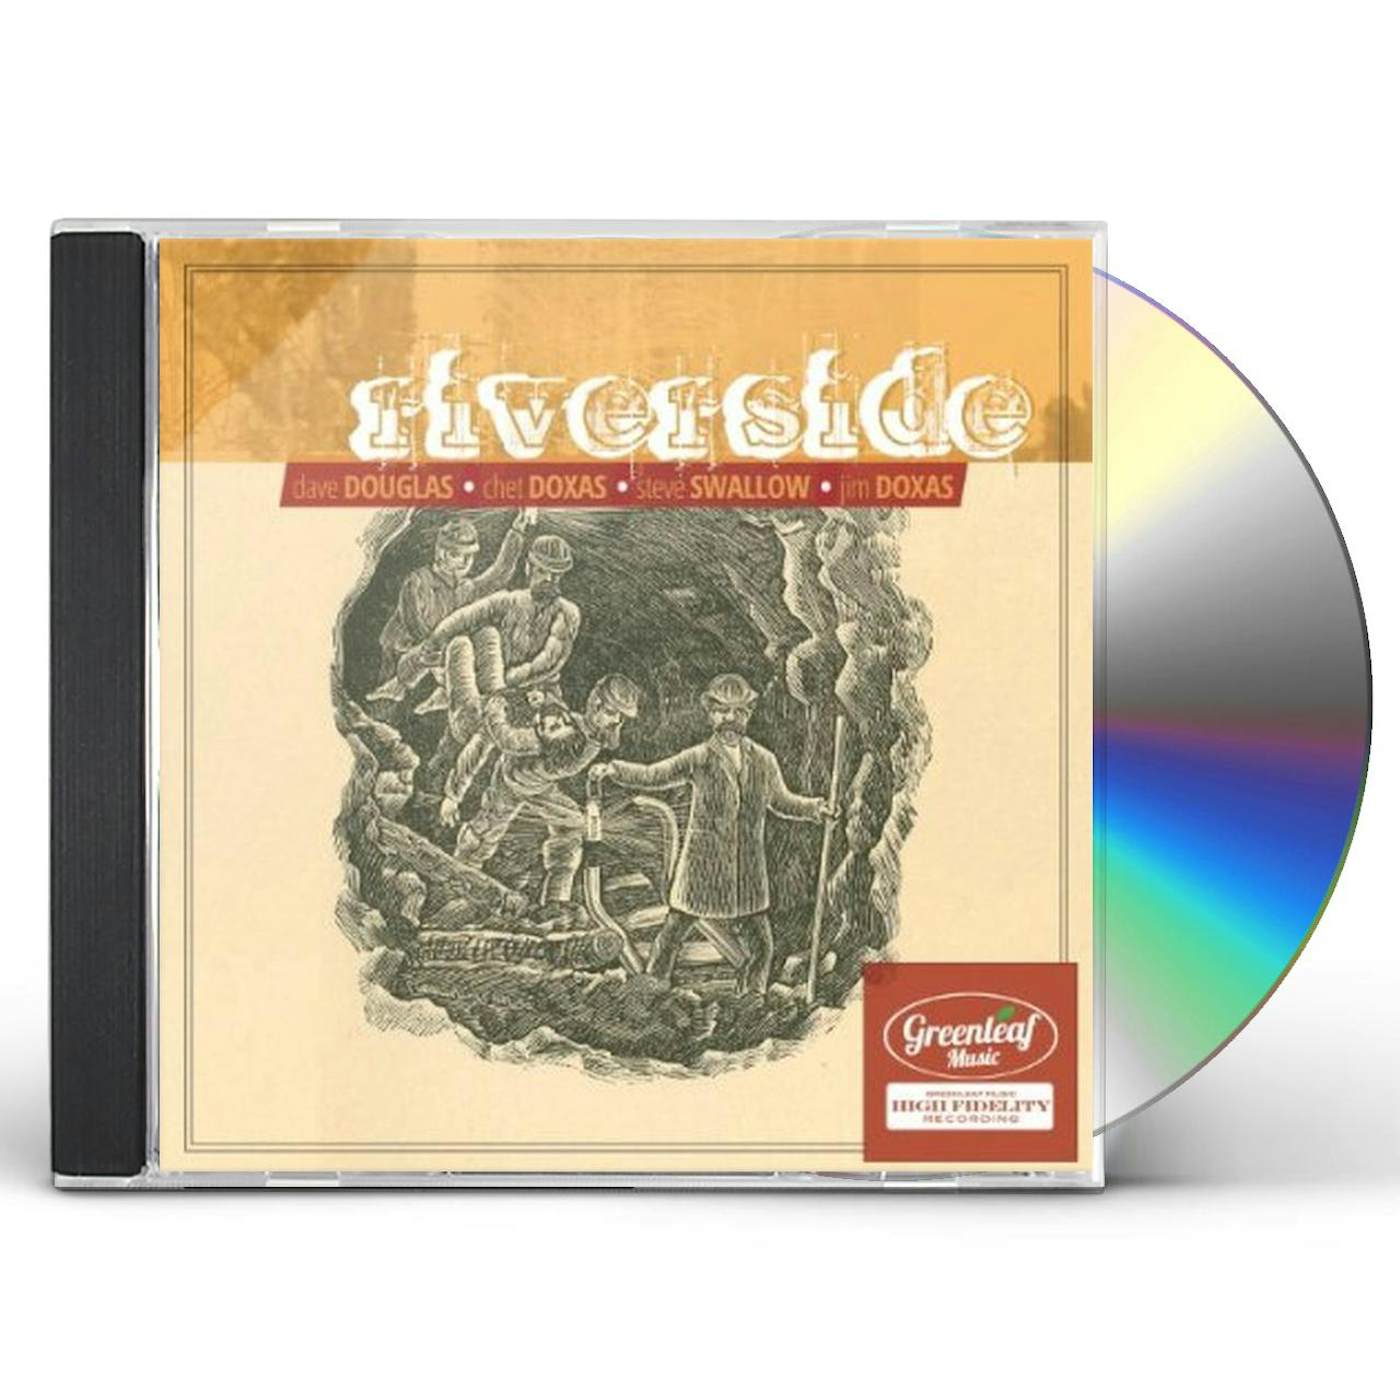 RIVERSIDE CD